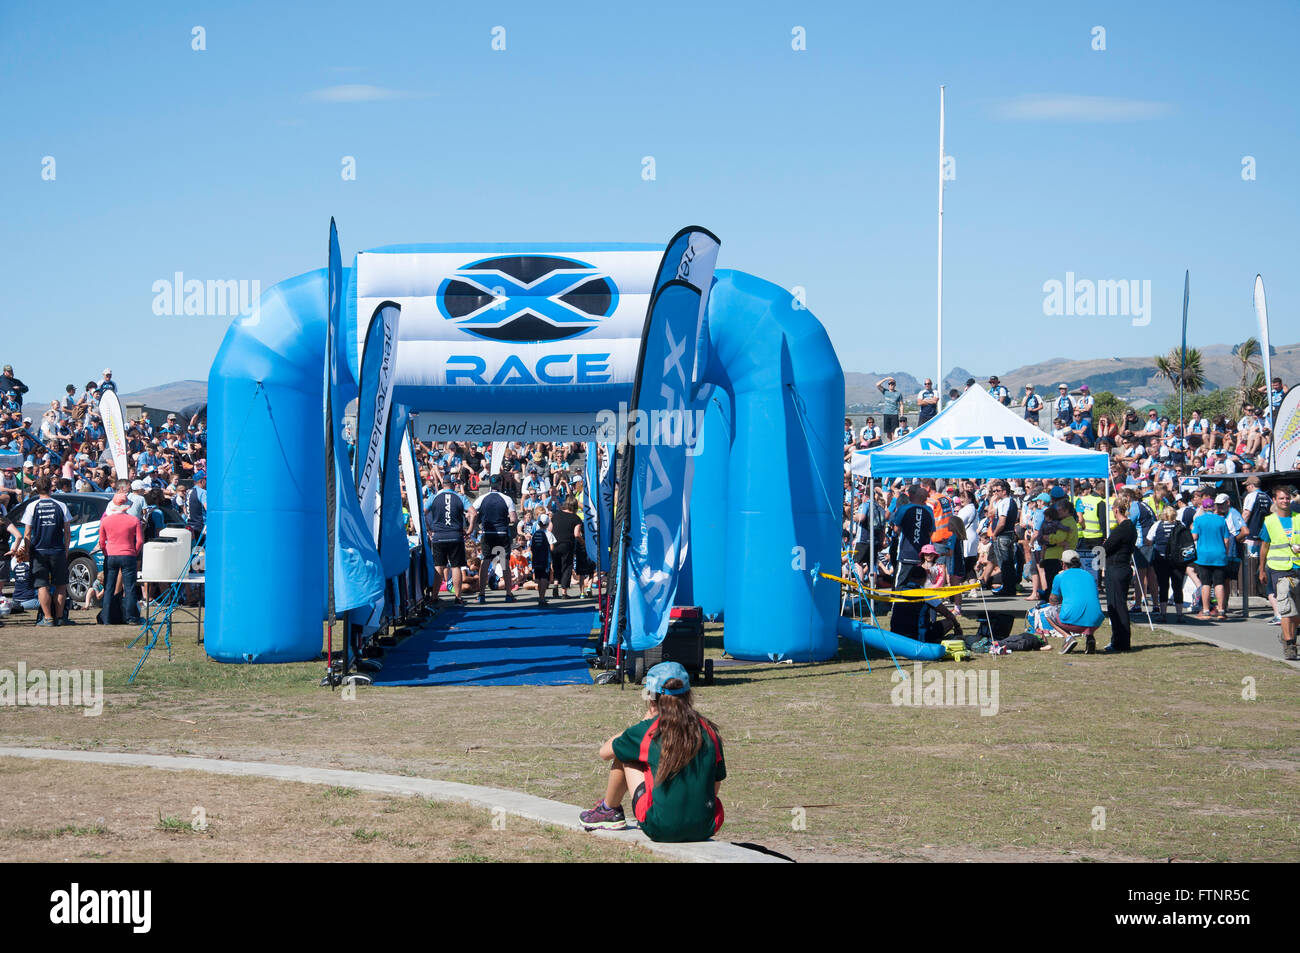 X-Race (Familienteam Spiel) Startlinie auf Vorland, New Brighton, Region Canterbury, Christchurch, Neuseeland, Stockfoto